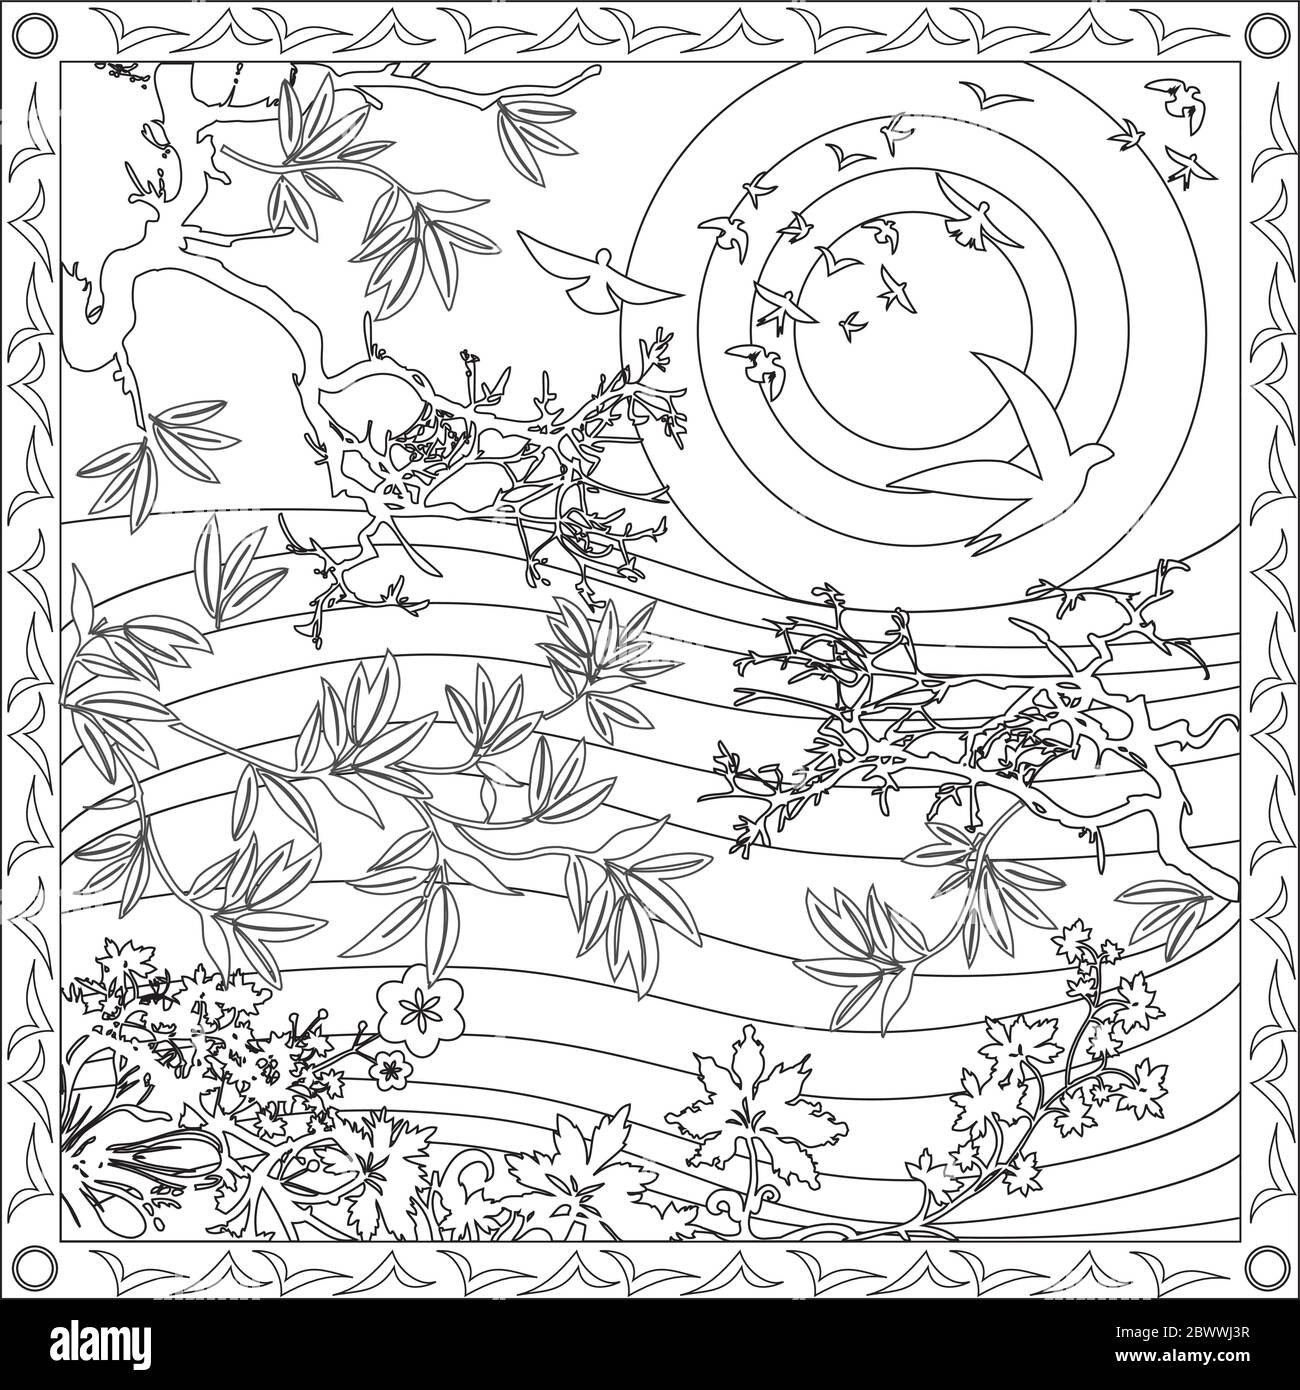 Página de colorear Ilustración en formato cuadrado para adultos, estilo japonés con aves y puesta de sol Ilustración del Vector